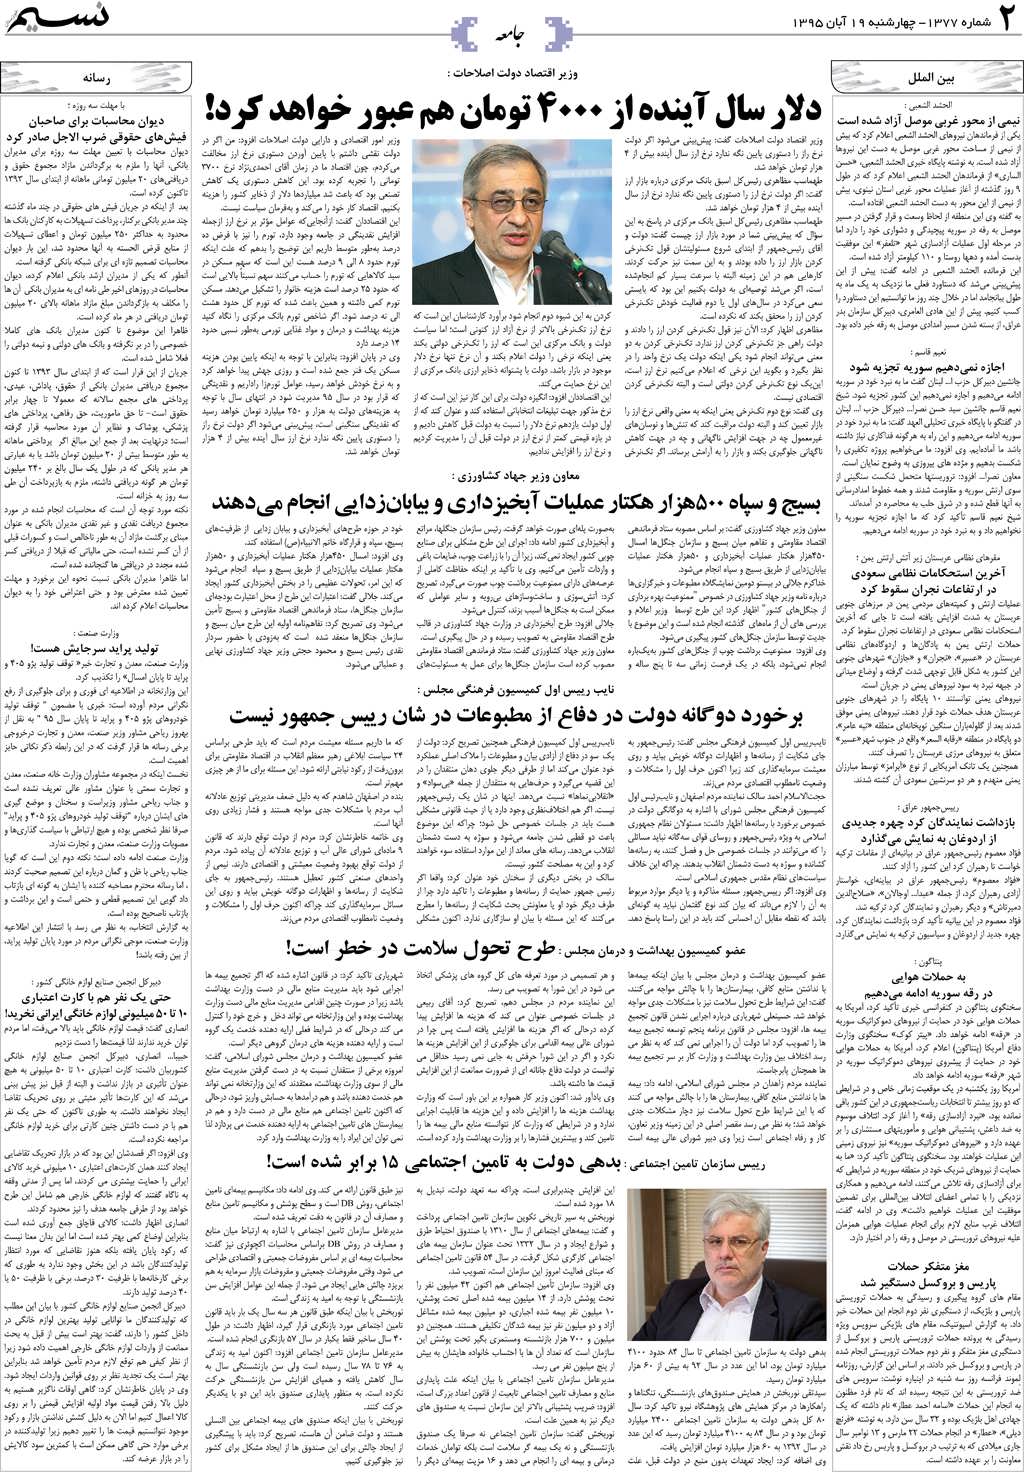 صفحه جامعه روزنامه نسیم شماره 1377